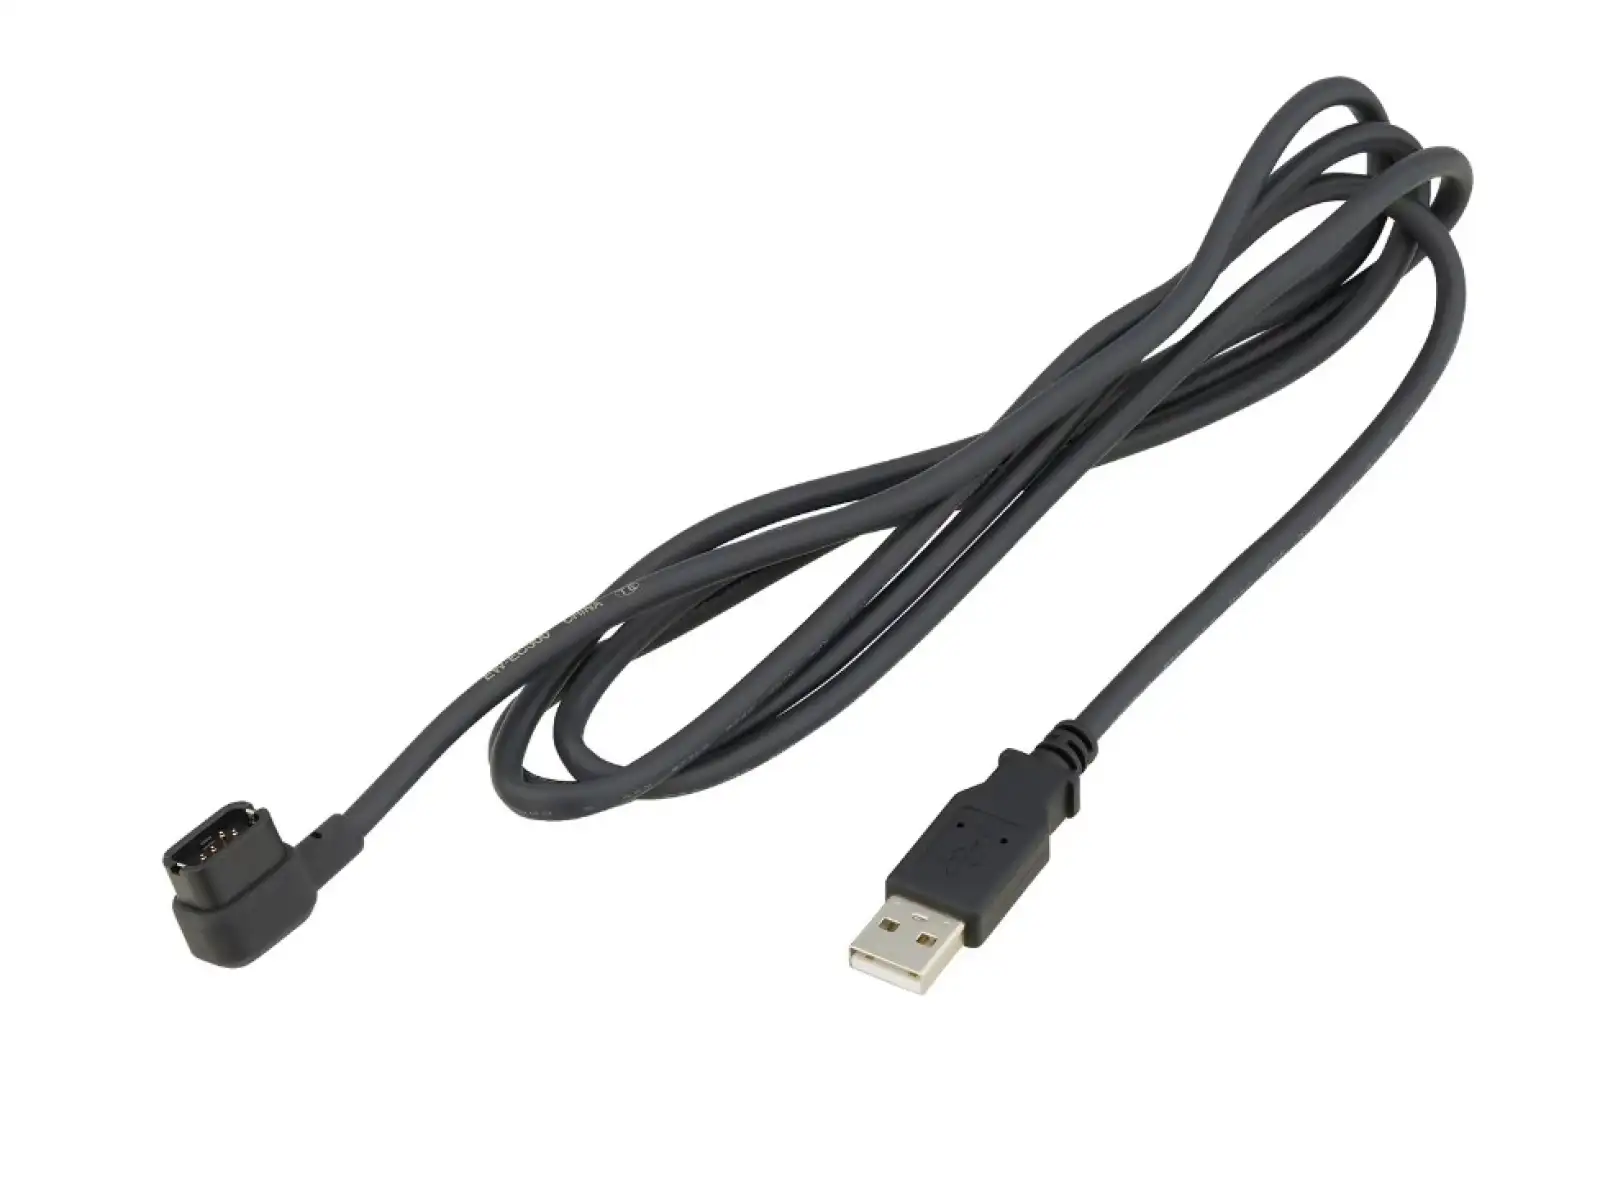 Shimano EW-EC300 nabíjecí kabel